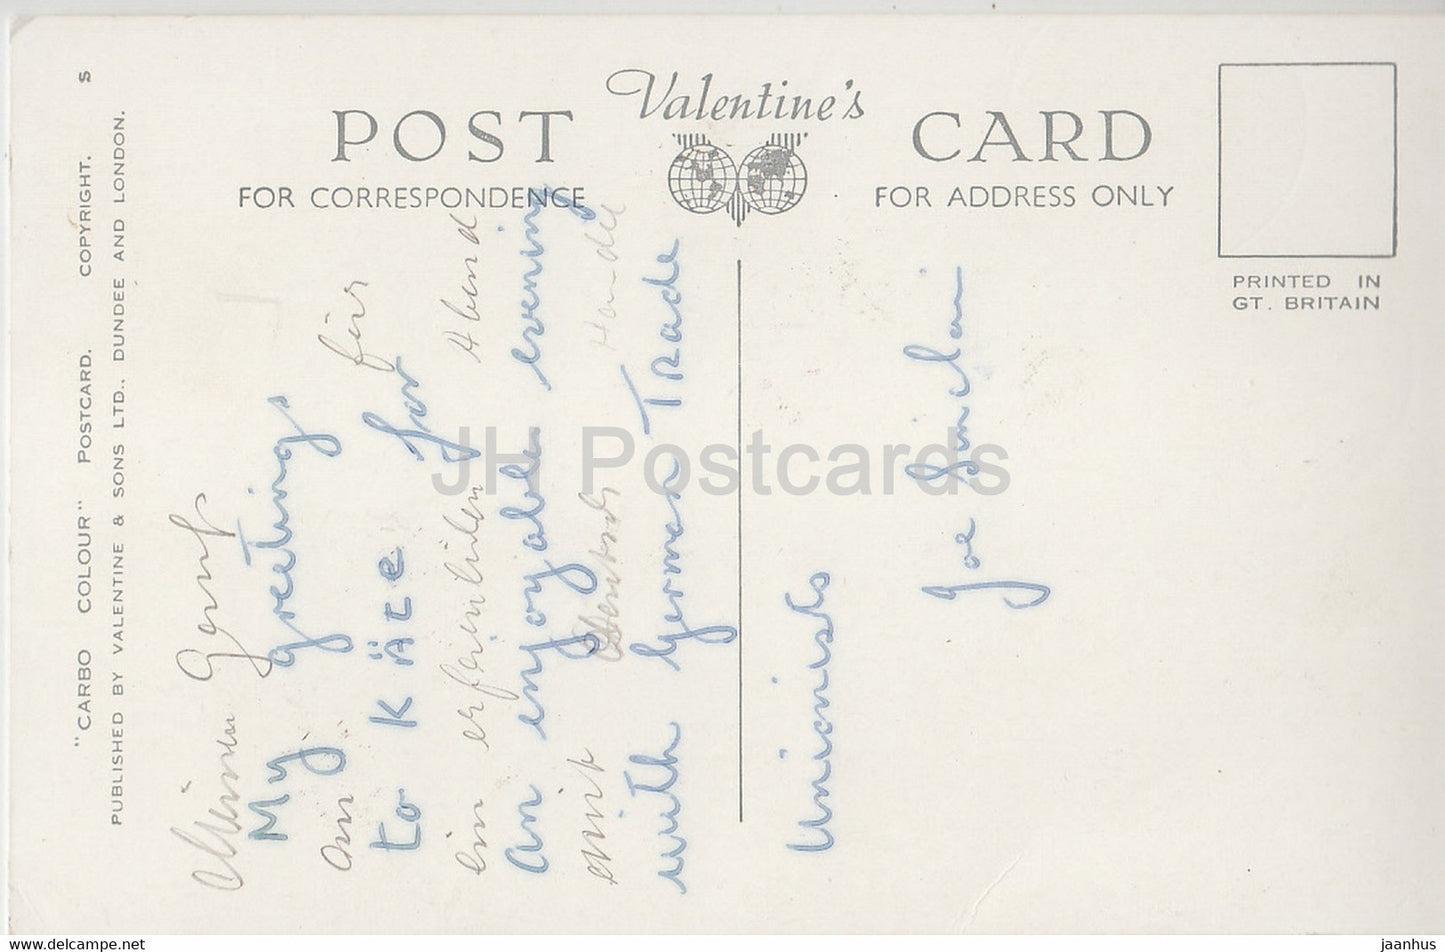 Un chalet en Irlande - Eva Brennan - carte postale ancienne - Irlande - utilisé